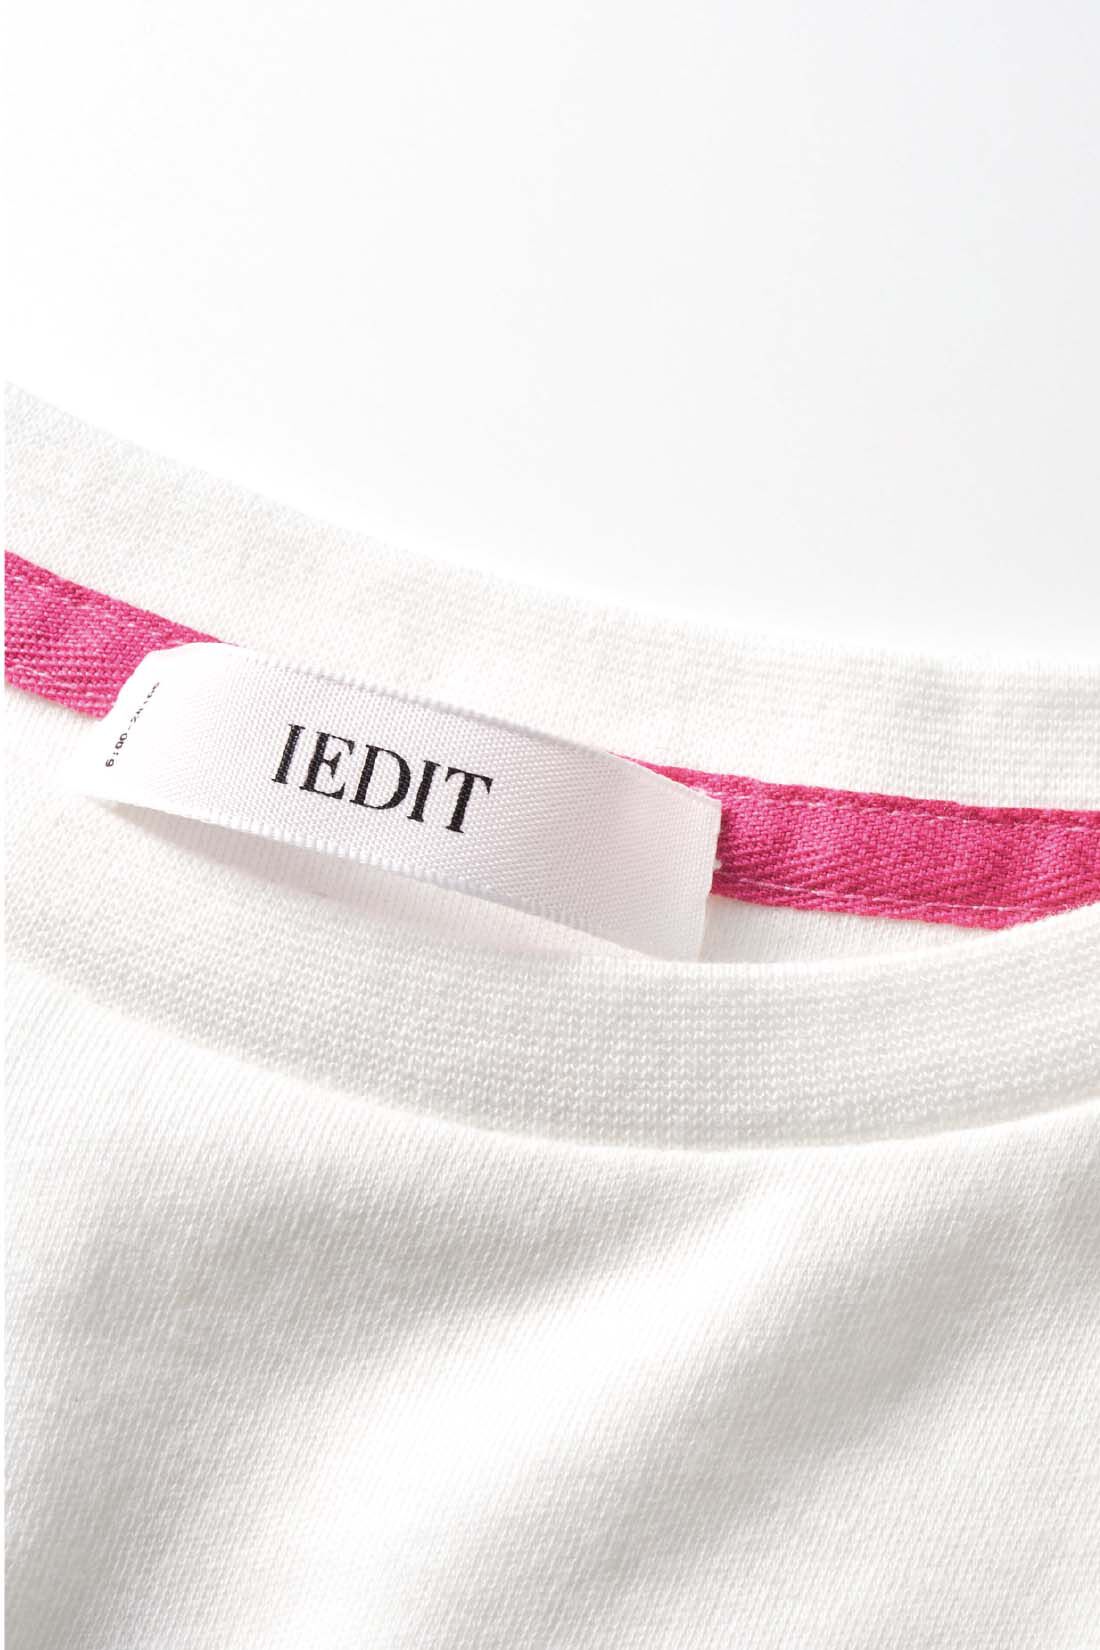 Real Stock|Live love cottonプロジェクト　IEDIT[イディット]　近代美術の創始者マネが描いたチャーミングなベルト・モリゾをあしらったパフスリーブアートTシャツ〈ホワイト〉|コラージュしたロゴに合わせてネック裏のテープもピンク色に。